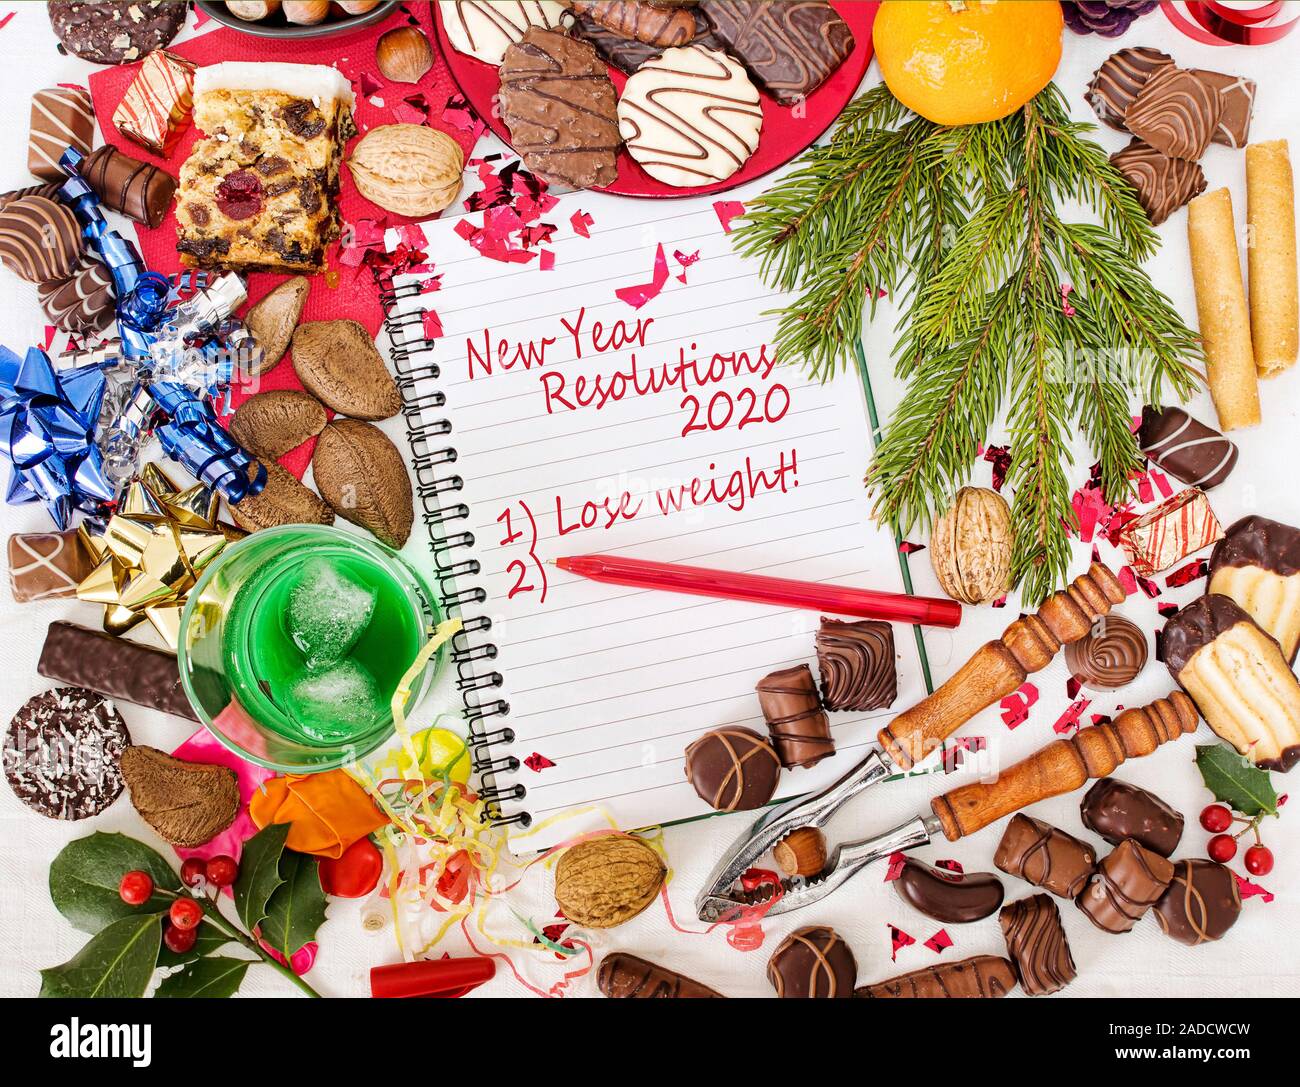 Pranzo Natale 2020.Pranzo Di Natale Festa E Nuovo Anno Risoluzione Alla Dieta 2020 Foto Stock Alamy